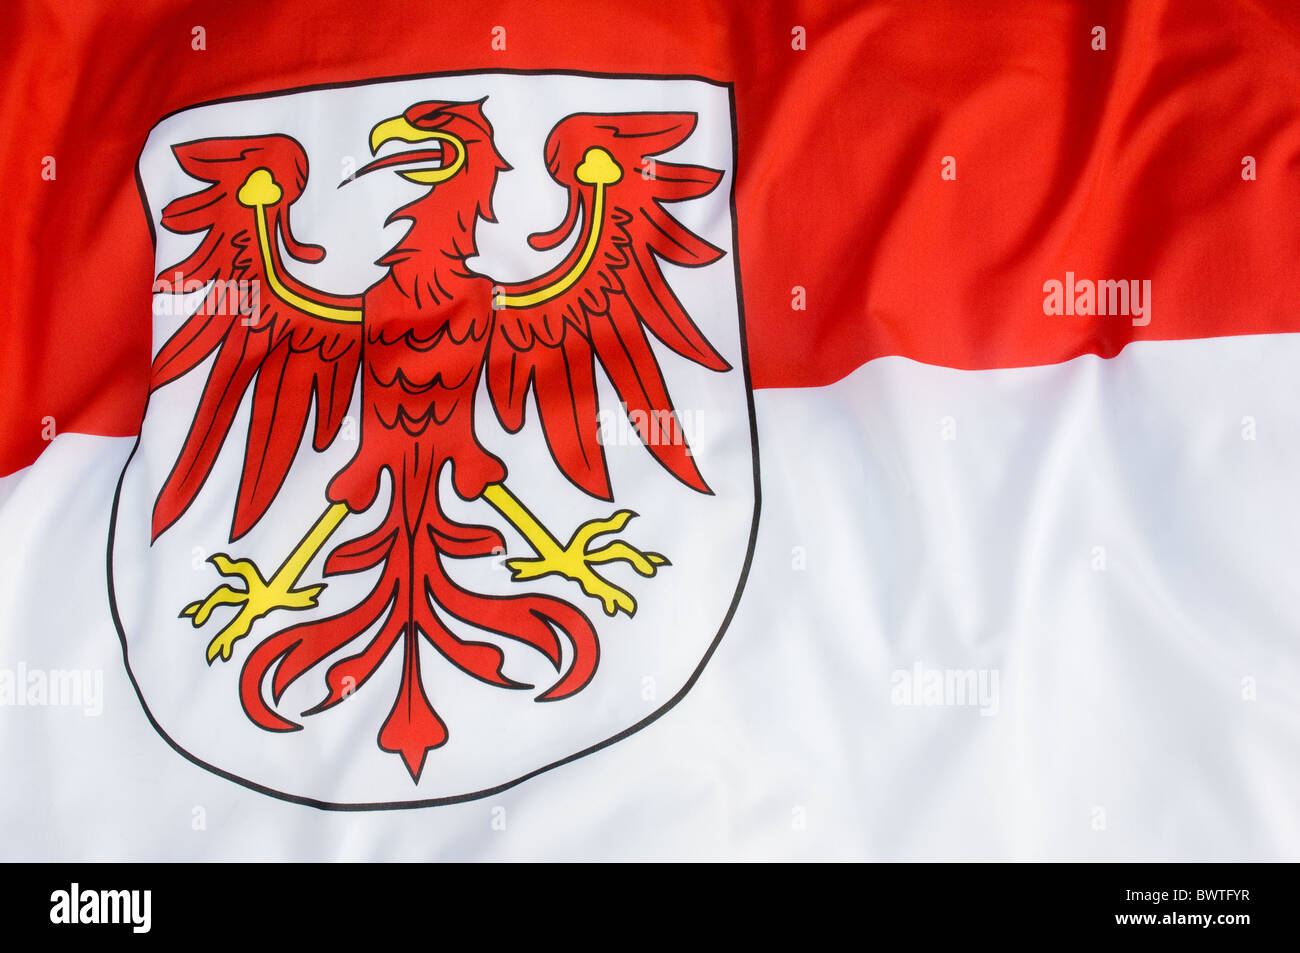 Wappen und Flagge  Brandenburgische Landeszentrale für politische Bildung